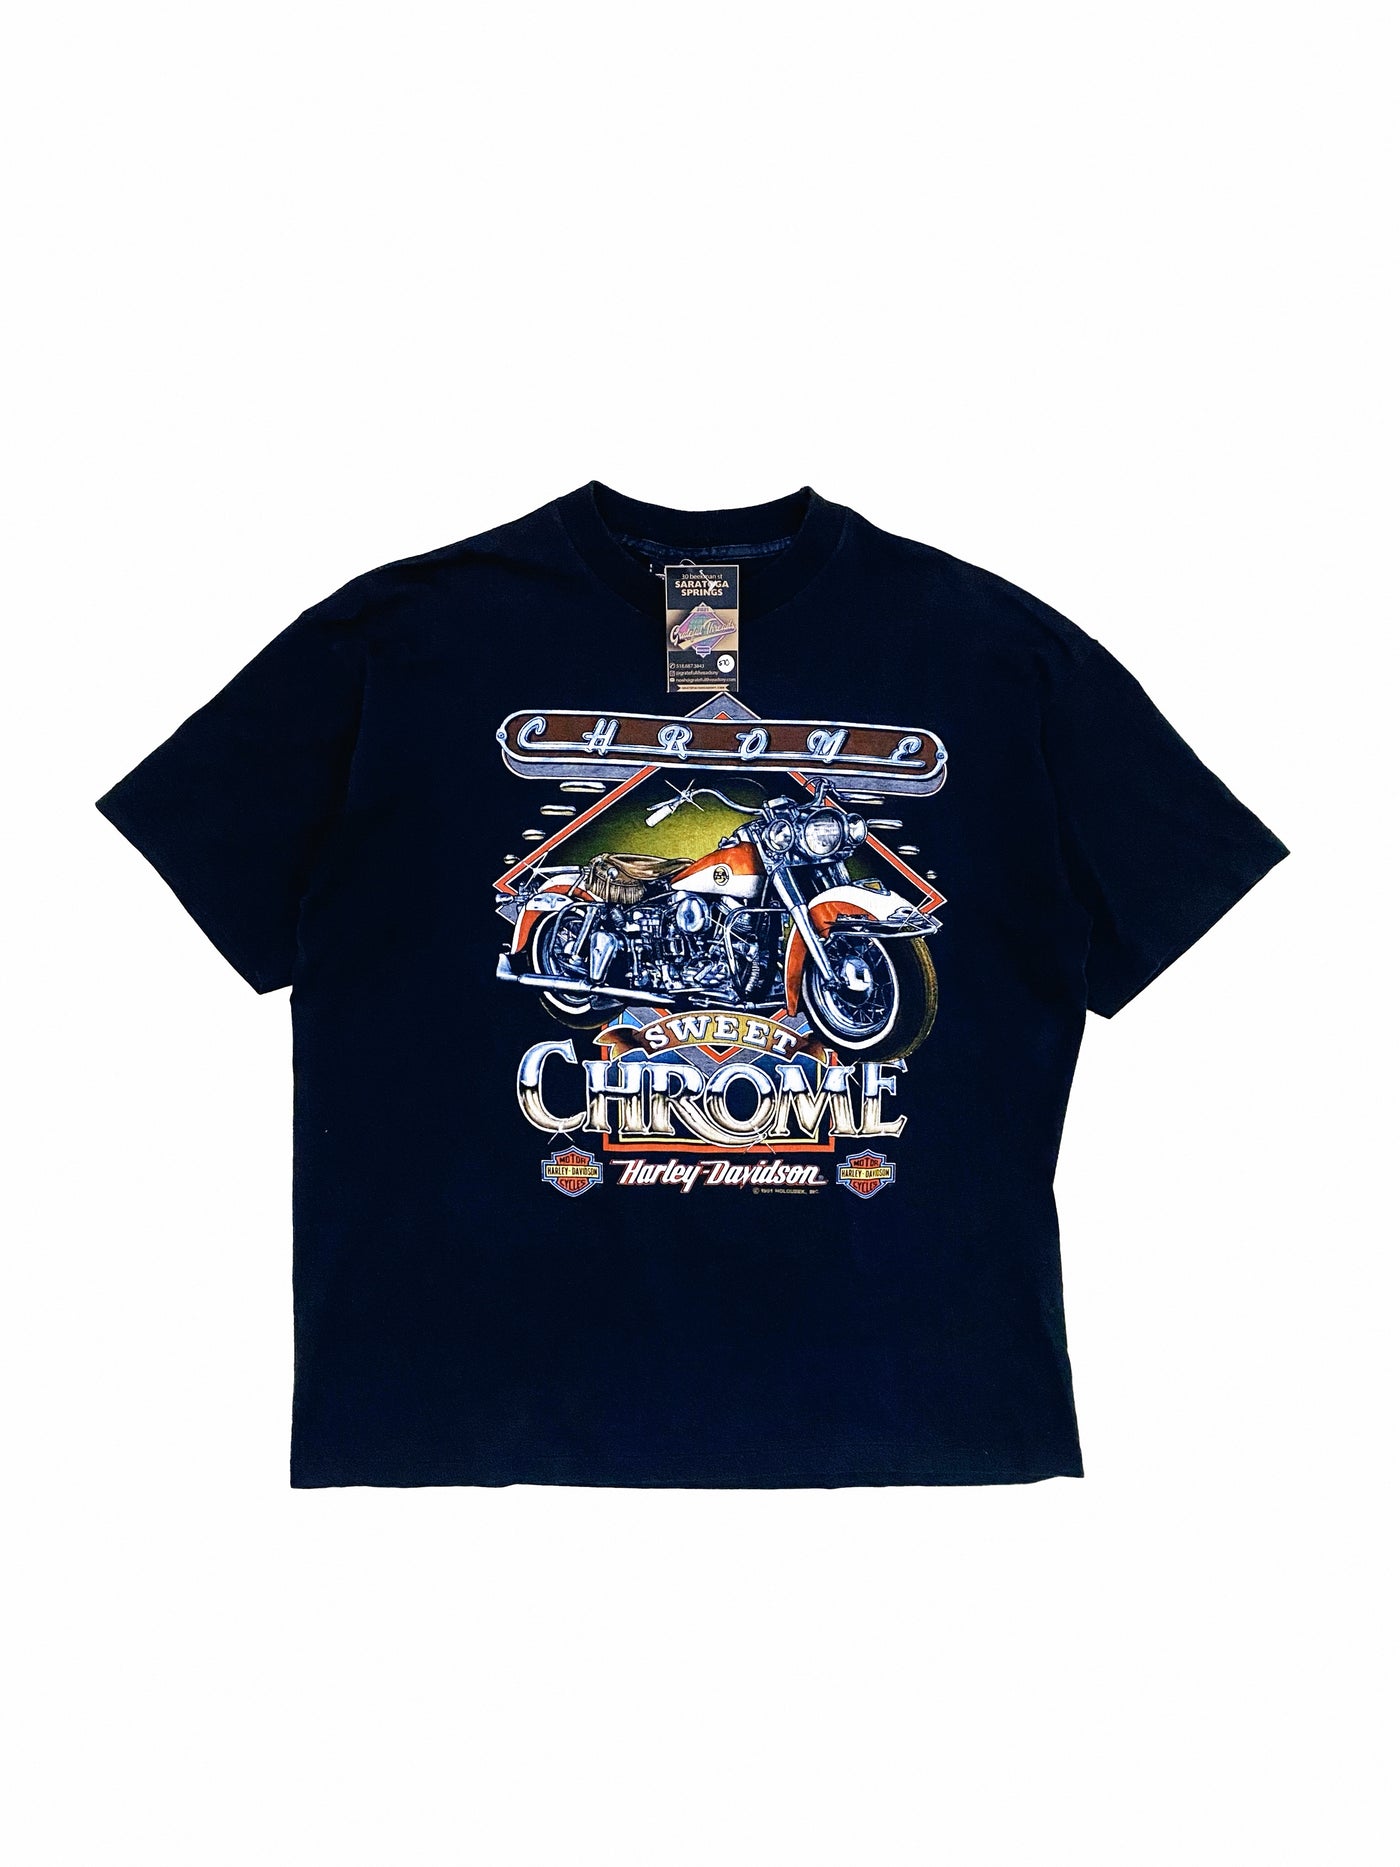 Vintage 1991 Sweet Chrome Harley Davidson T-Shirt